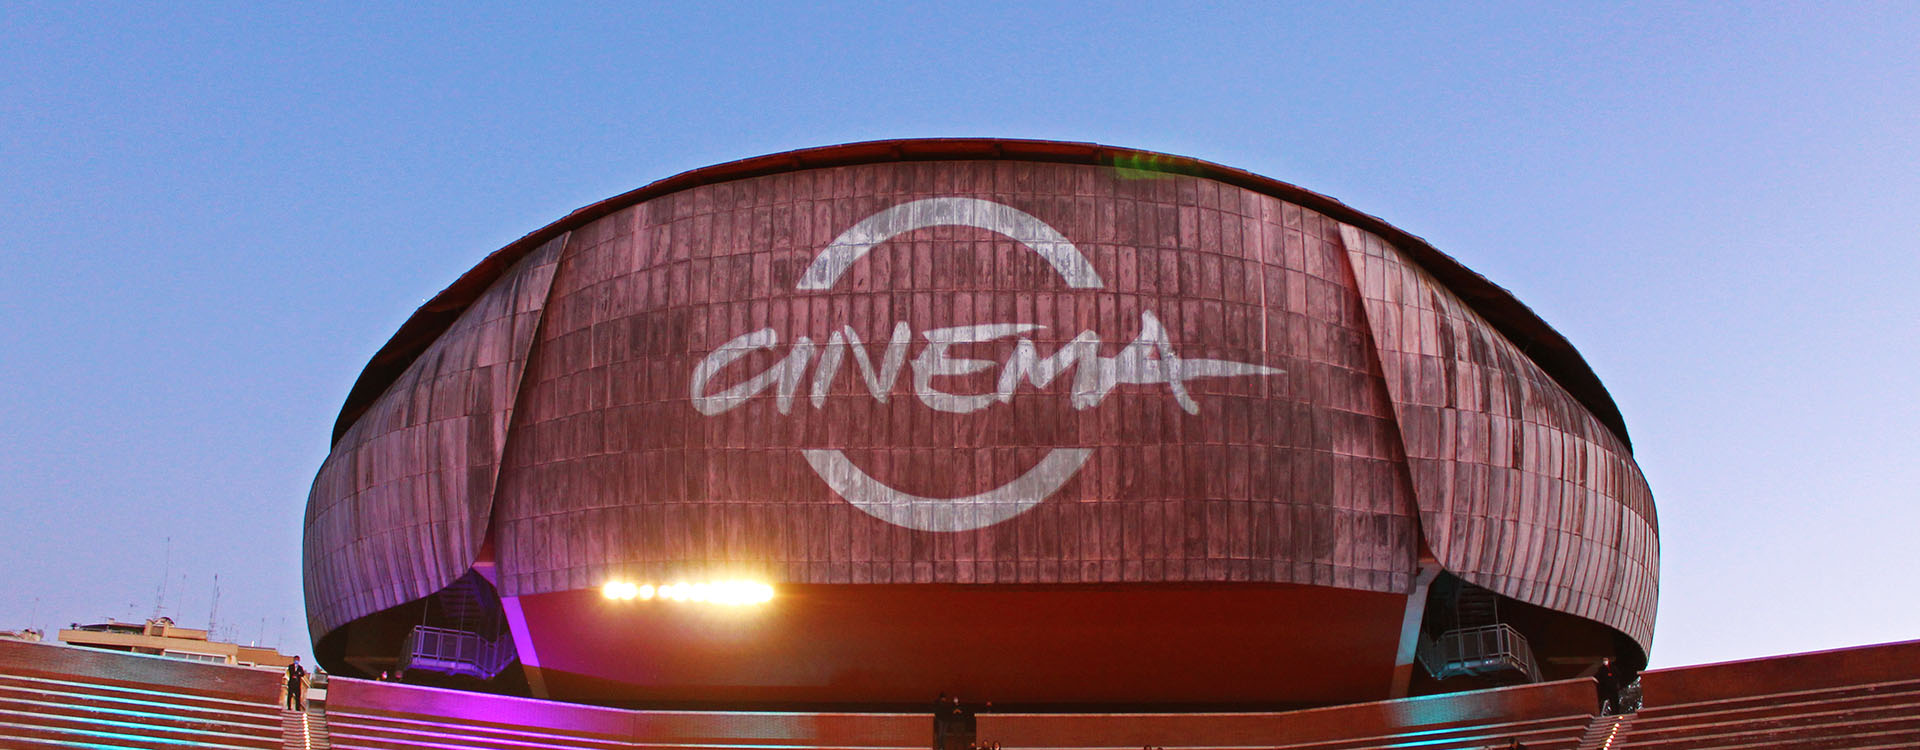 Gli spazi pubblicitari di APA alla Festa del Cinema di Roma: uno degli edifici dell'Auditorium con il logo della Festa del Cinema proiettato sopra. 